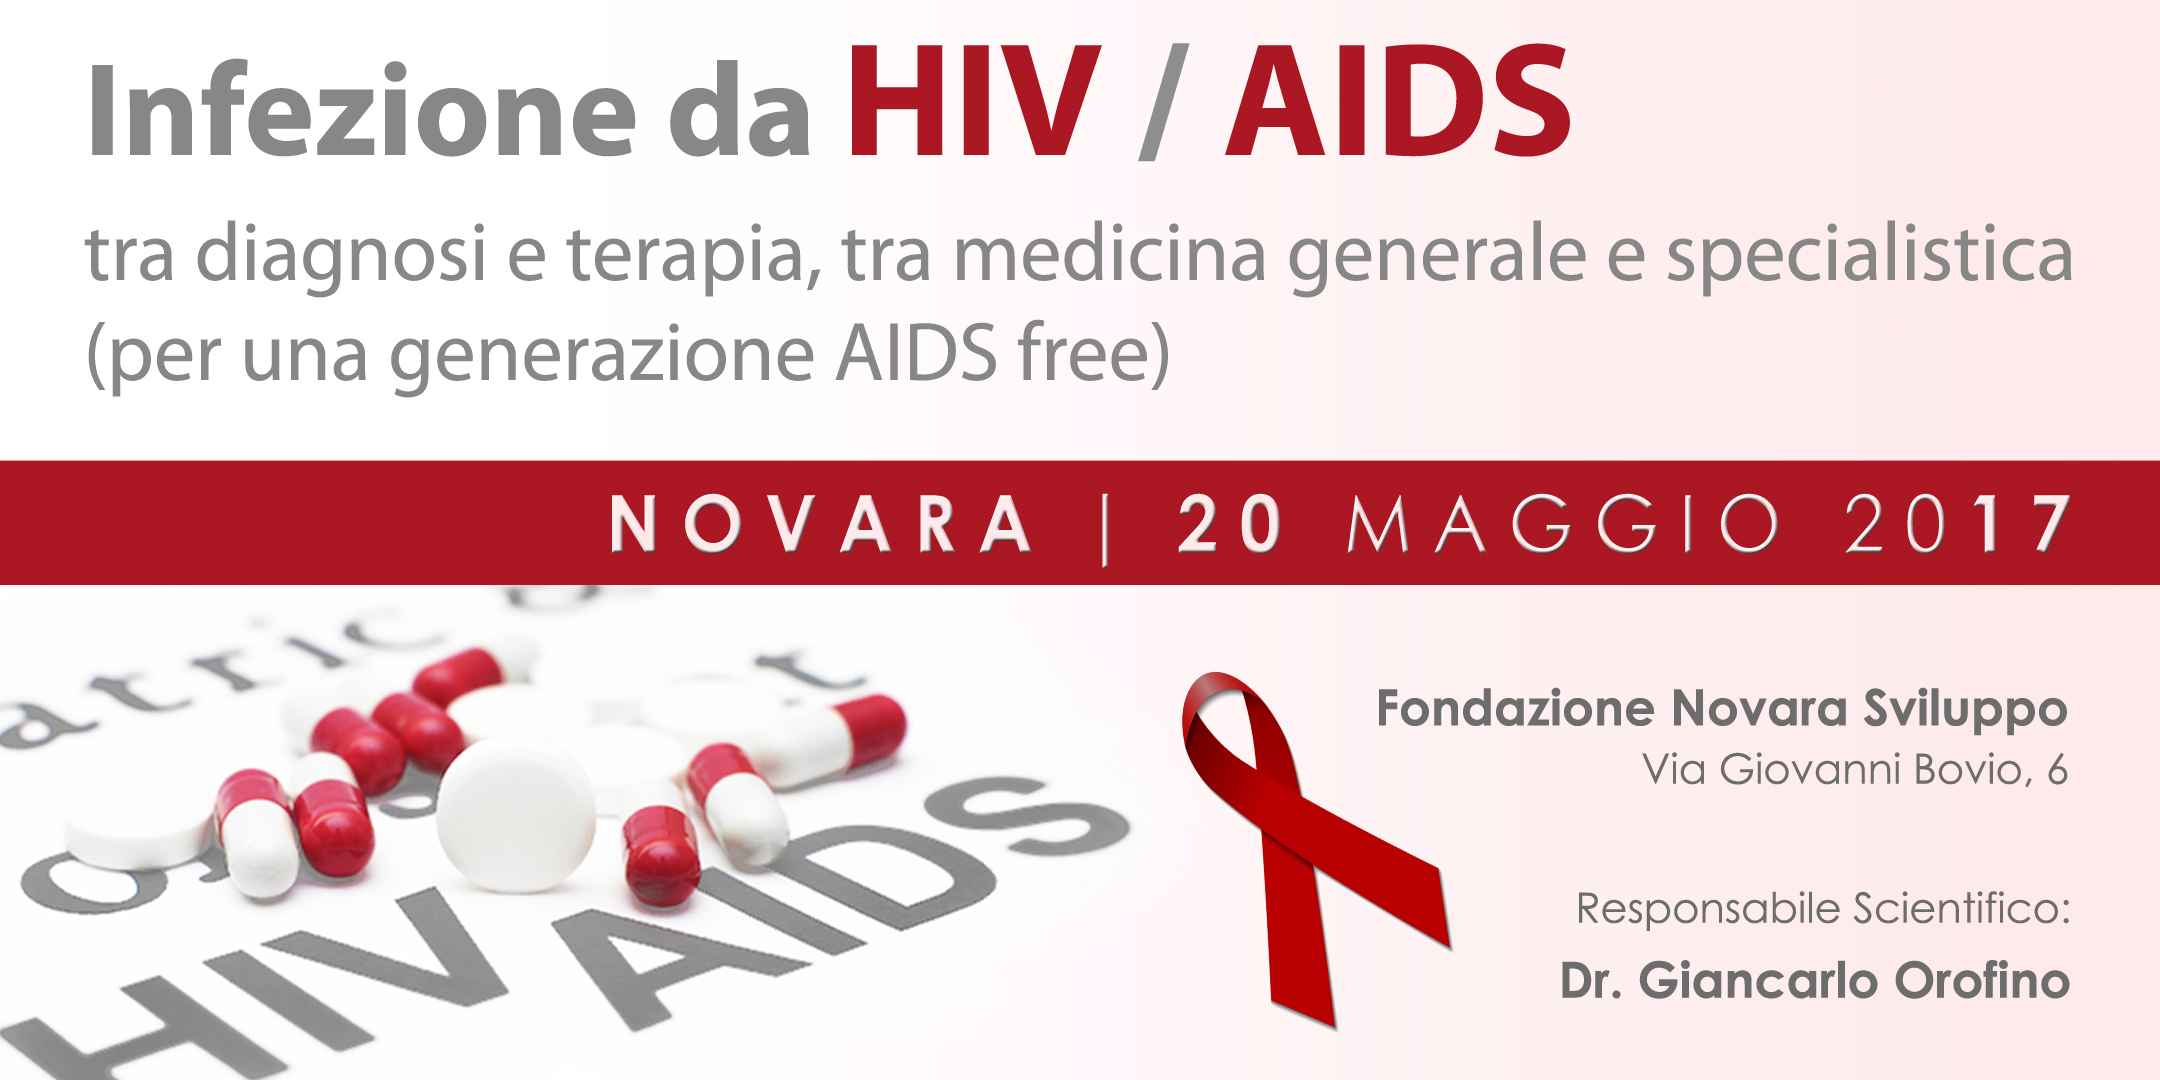 Infezione da HIV/AIDS (Novara) | Symposia ECM